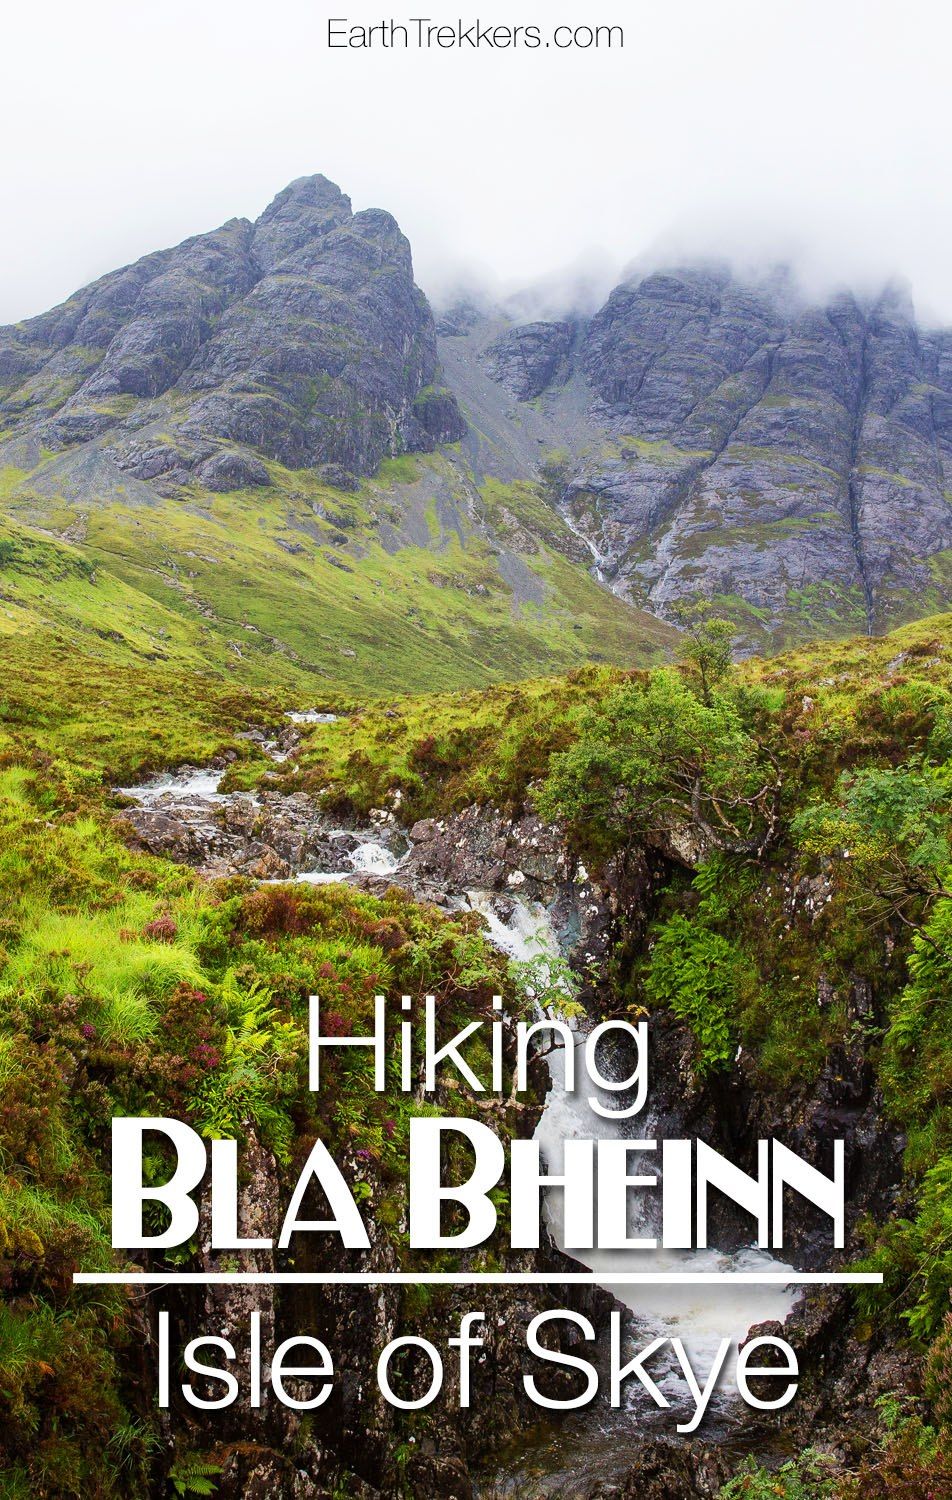 Hiking Bla Bheinn Isle of Skye